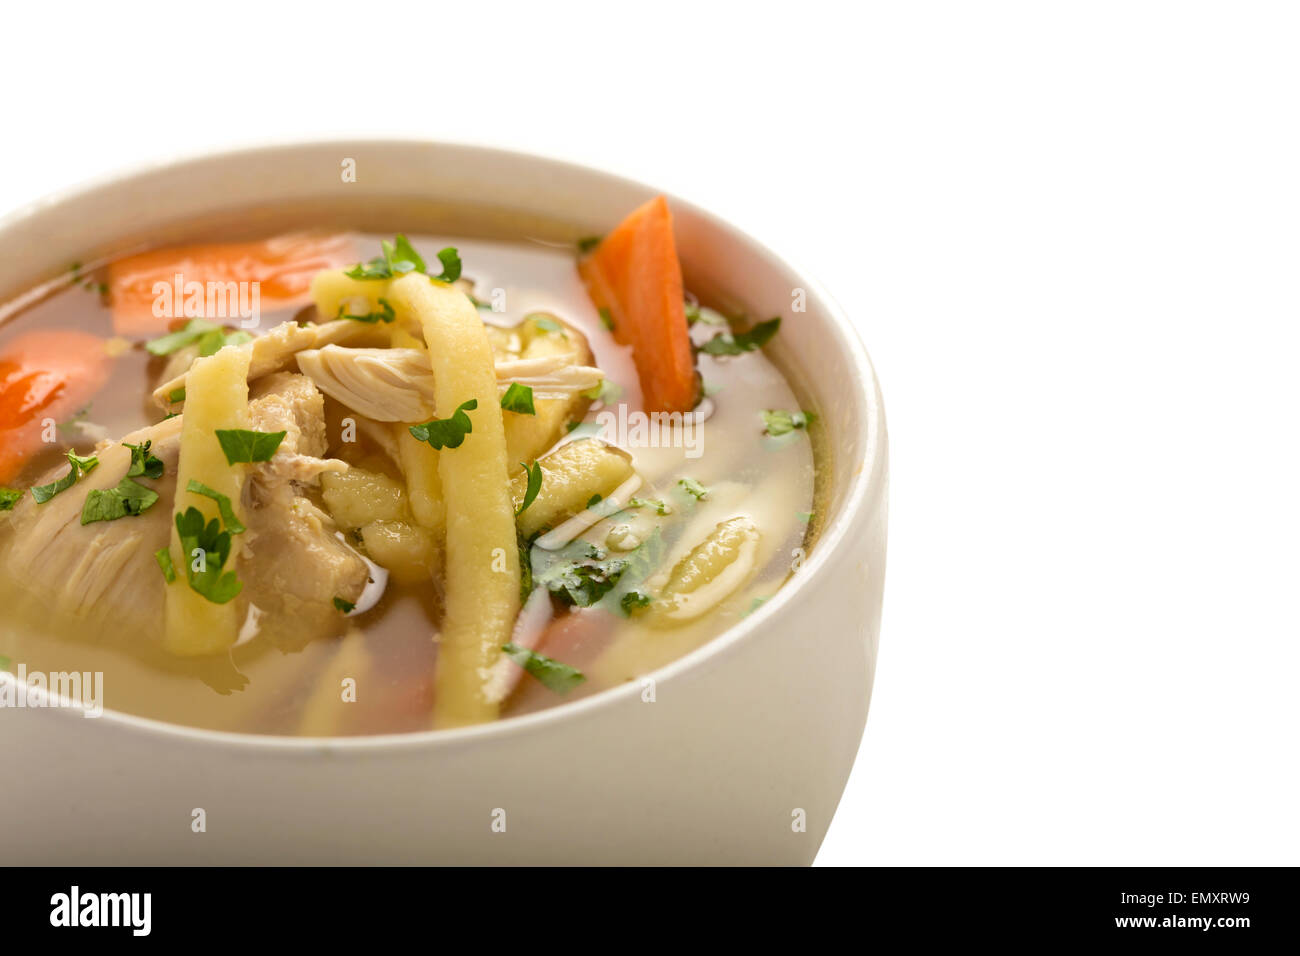 Ciotola di zuppa di pollo con verdure, tagliatelle e prezzemolo isolate su sfondo bianco con tracciato di ritaglio Foto Stock